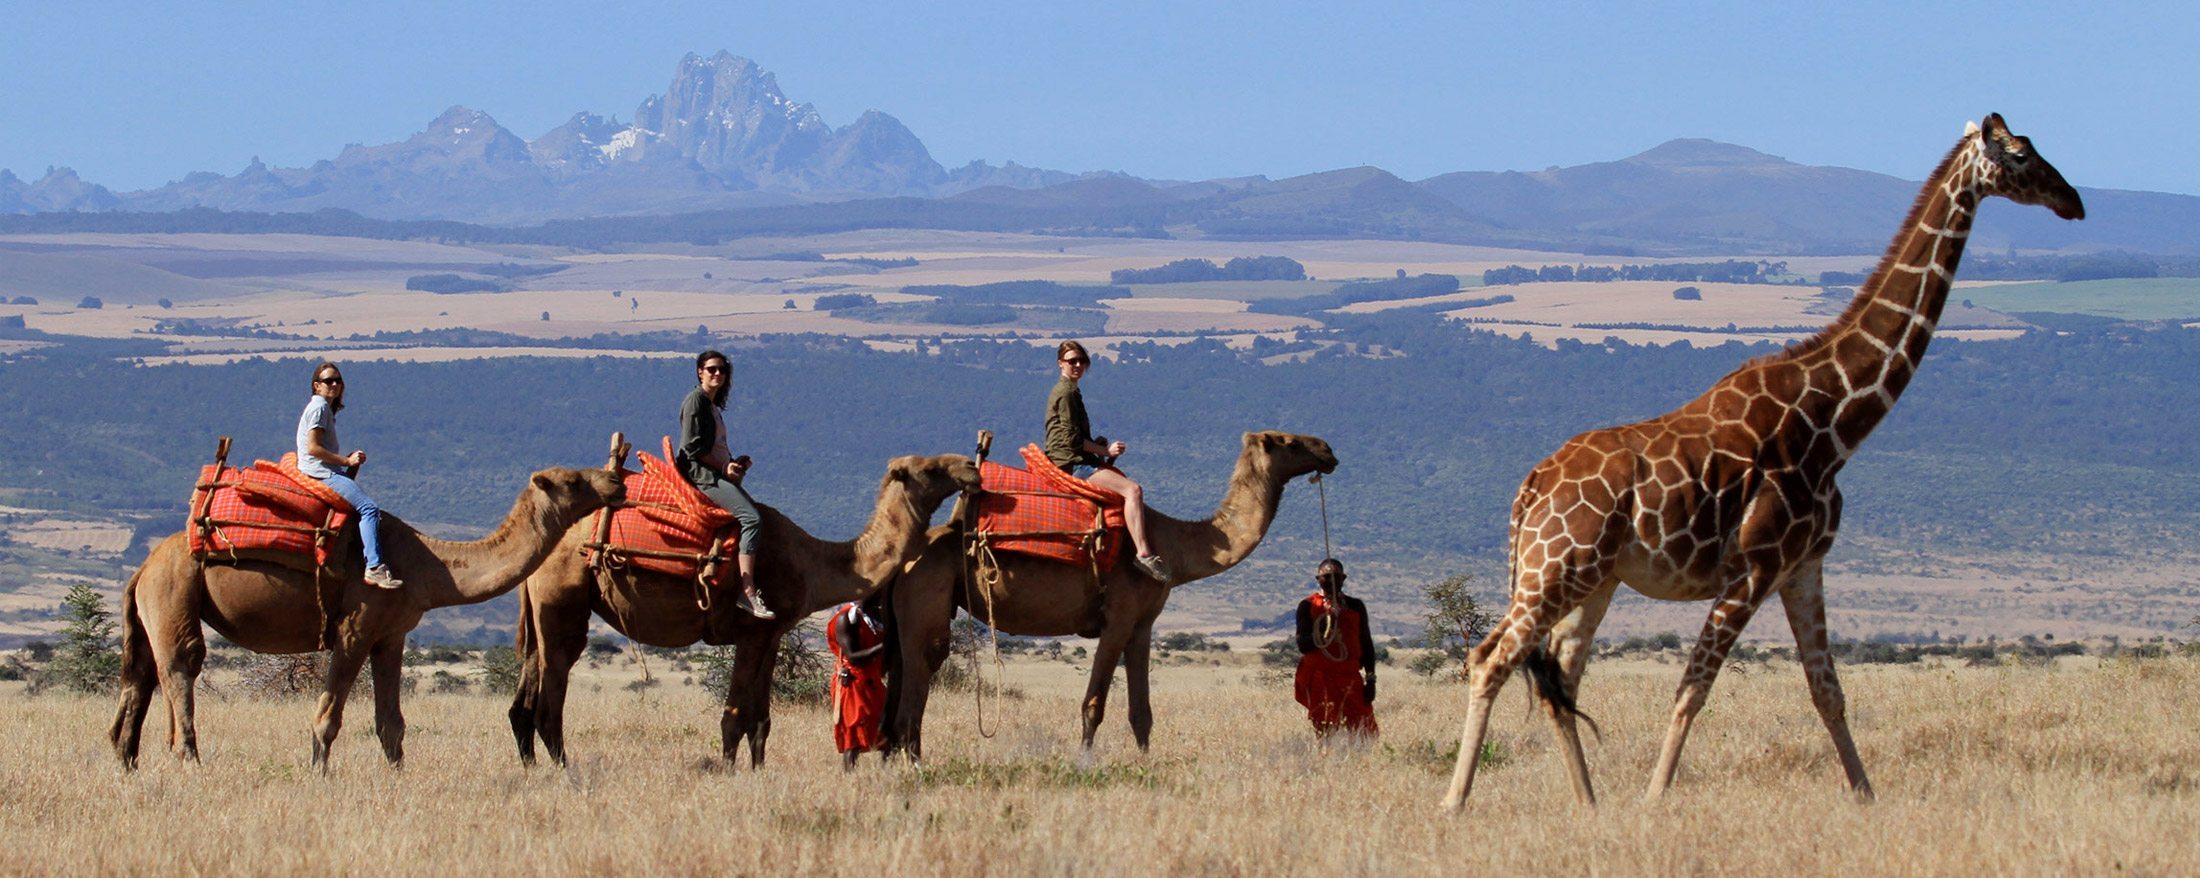 Kenya's breathtaking northern destination